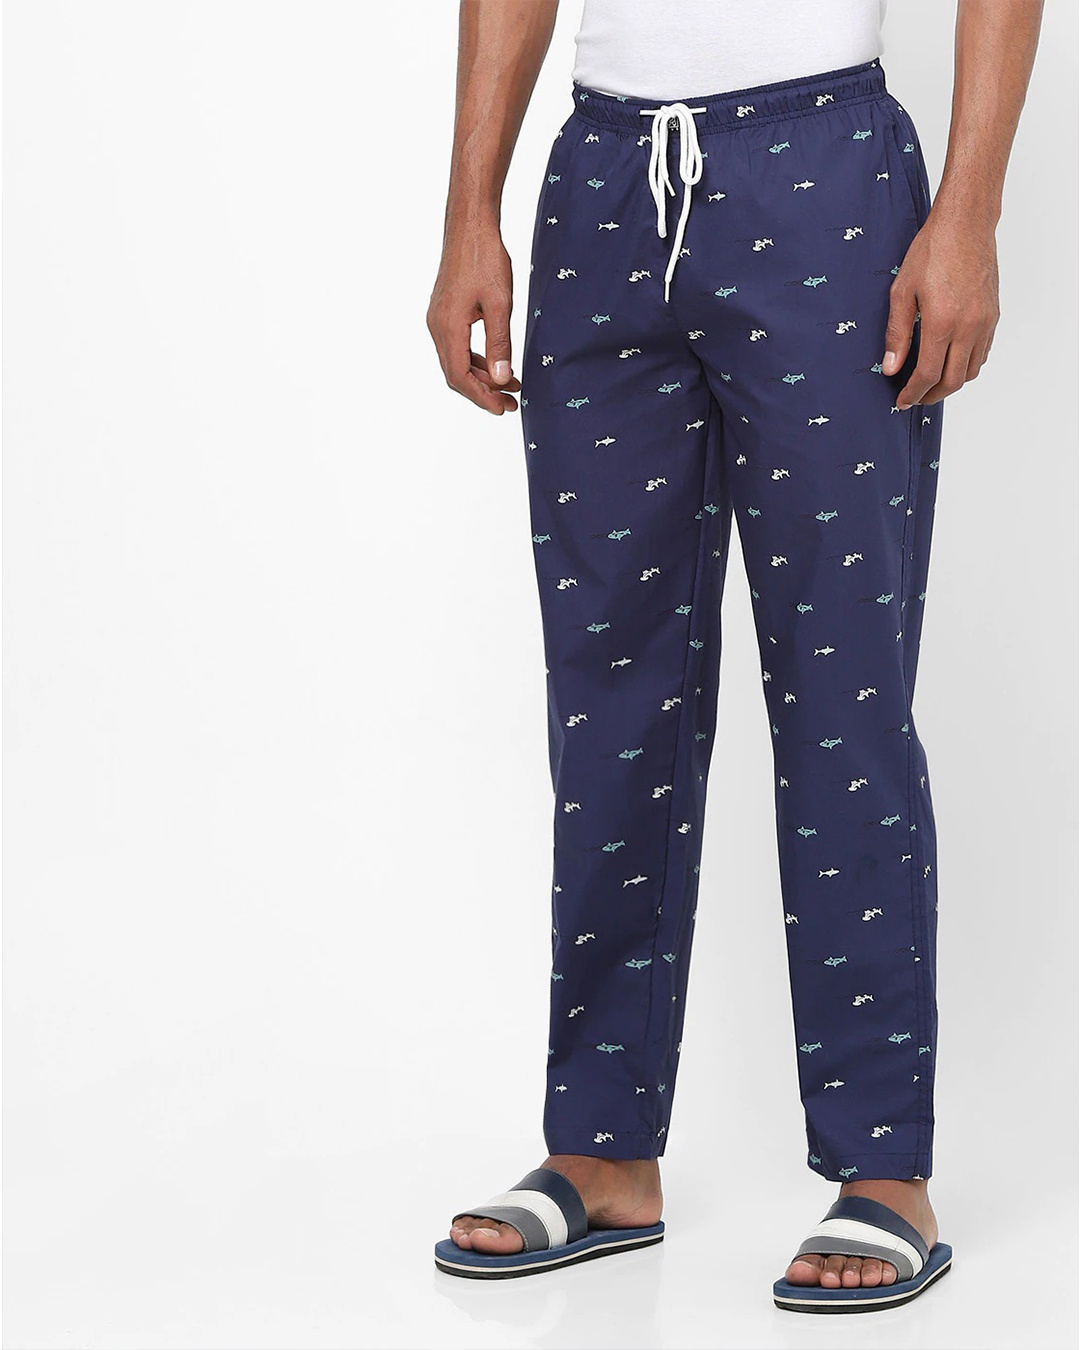 Buy Men's Blue AOP Cotton Pyjamas Online in India at Bewakoof